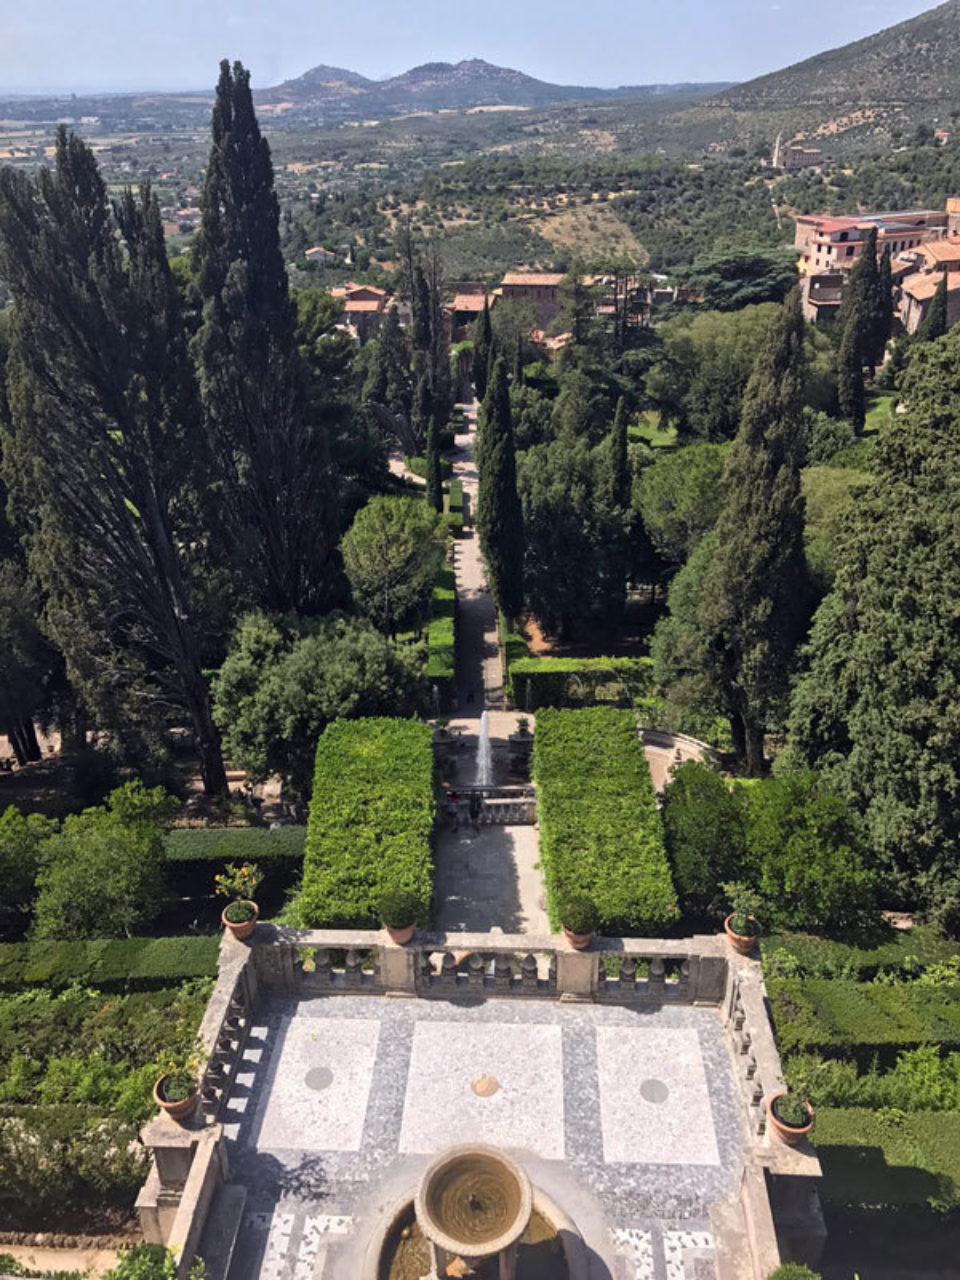 View of the gardens at the Villa d'Este